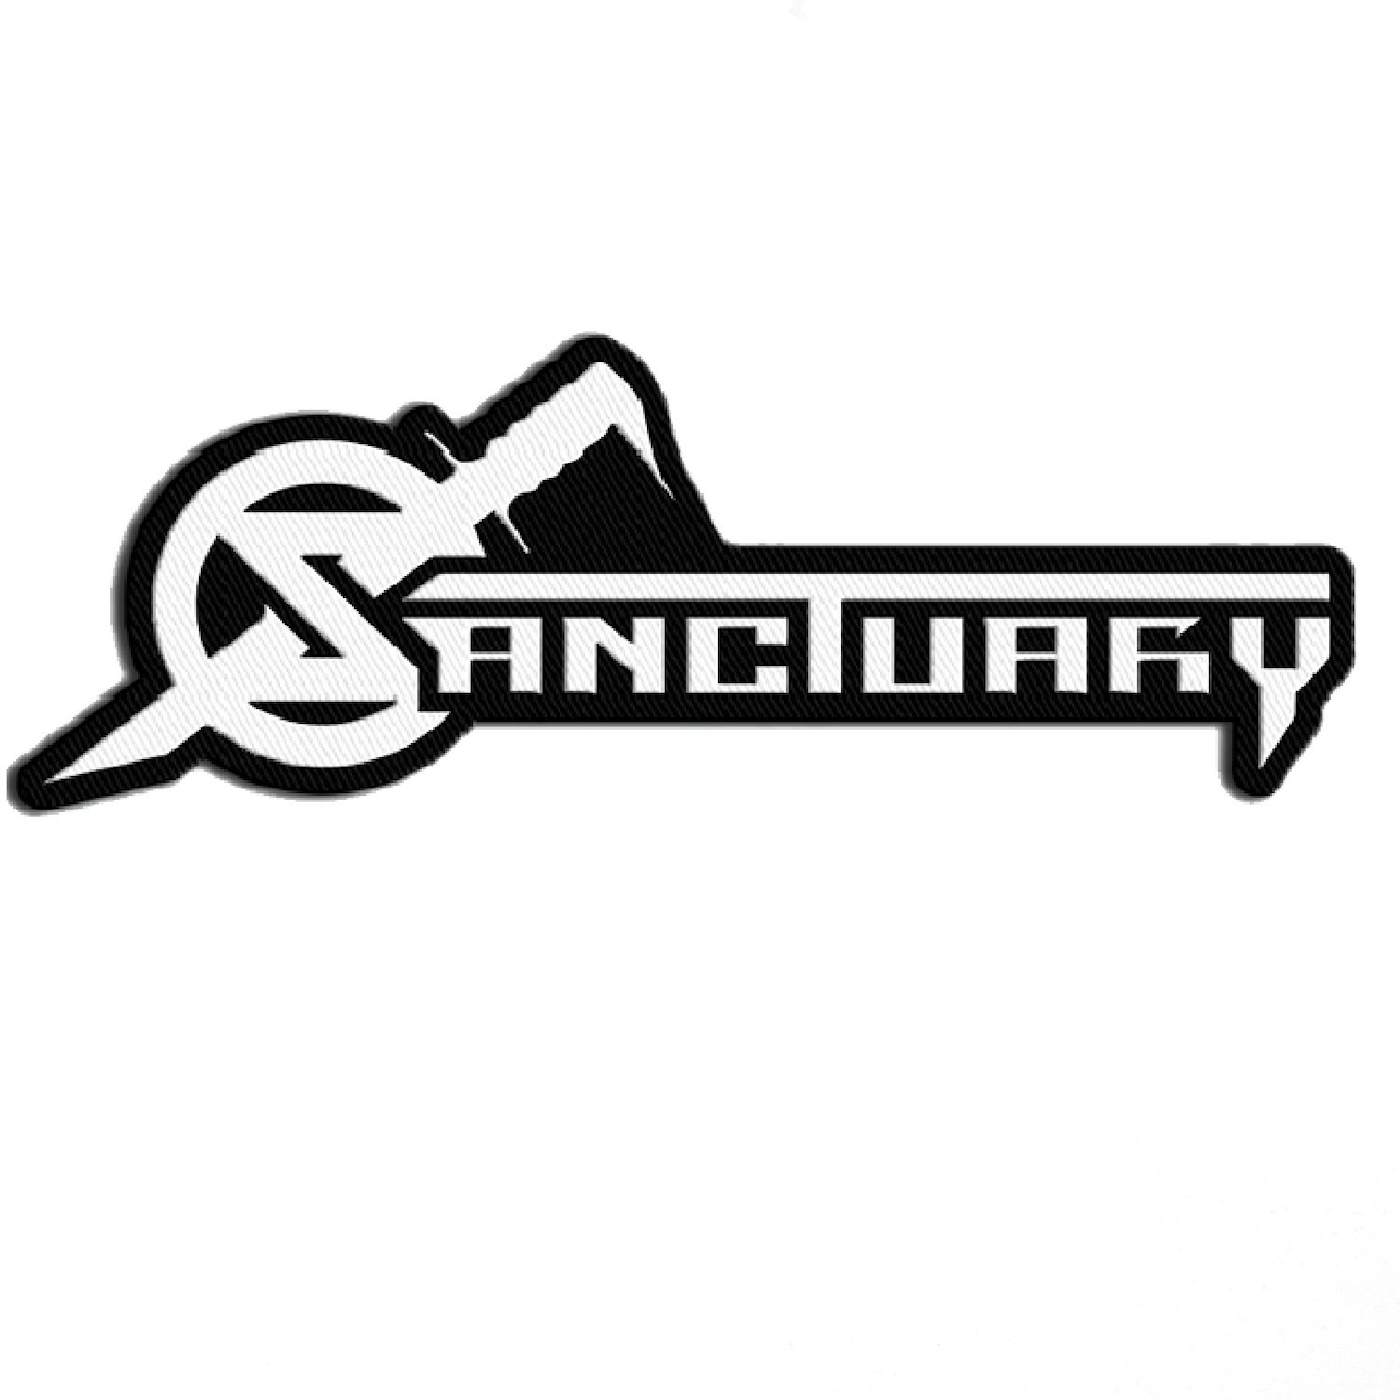 Sanctuary "Logo" Patch